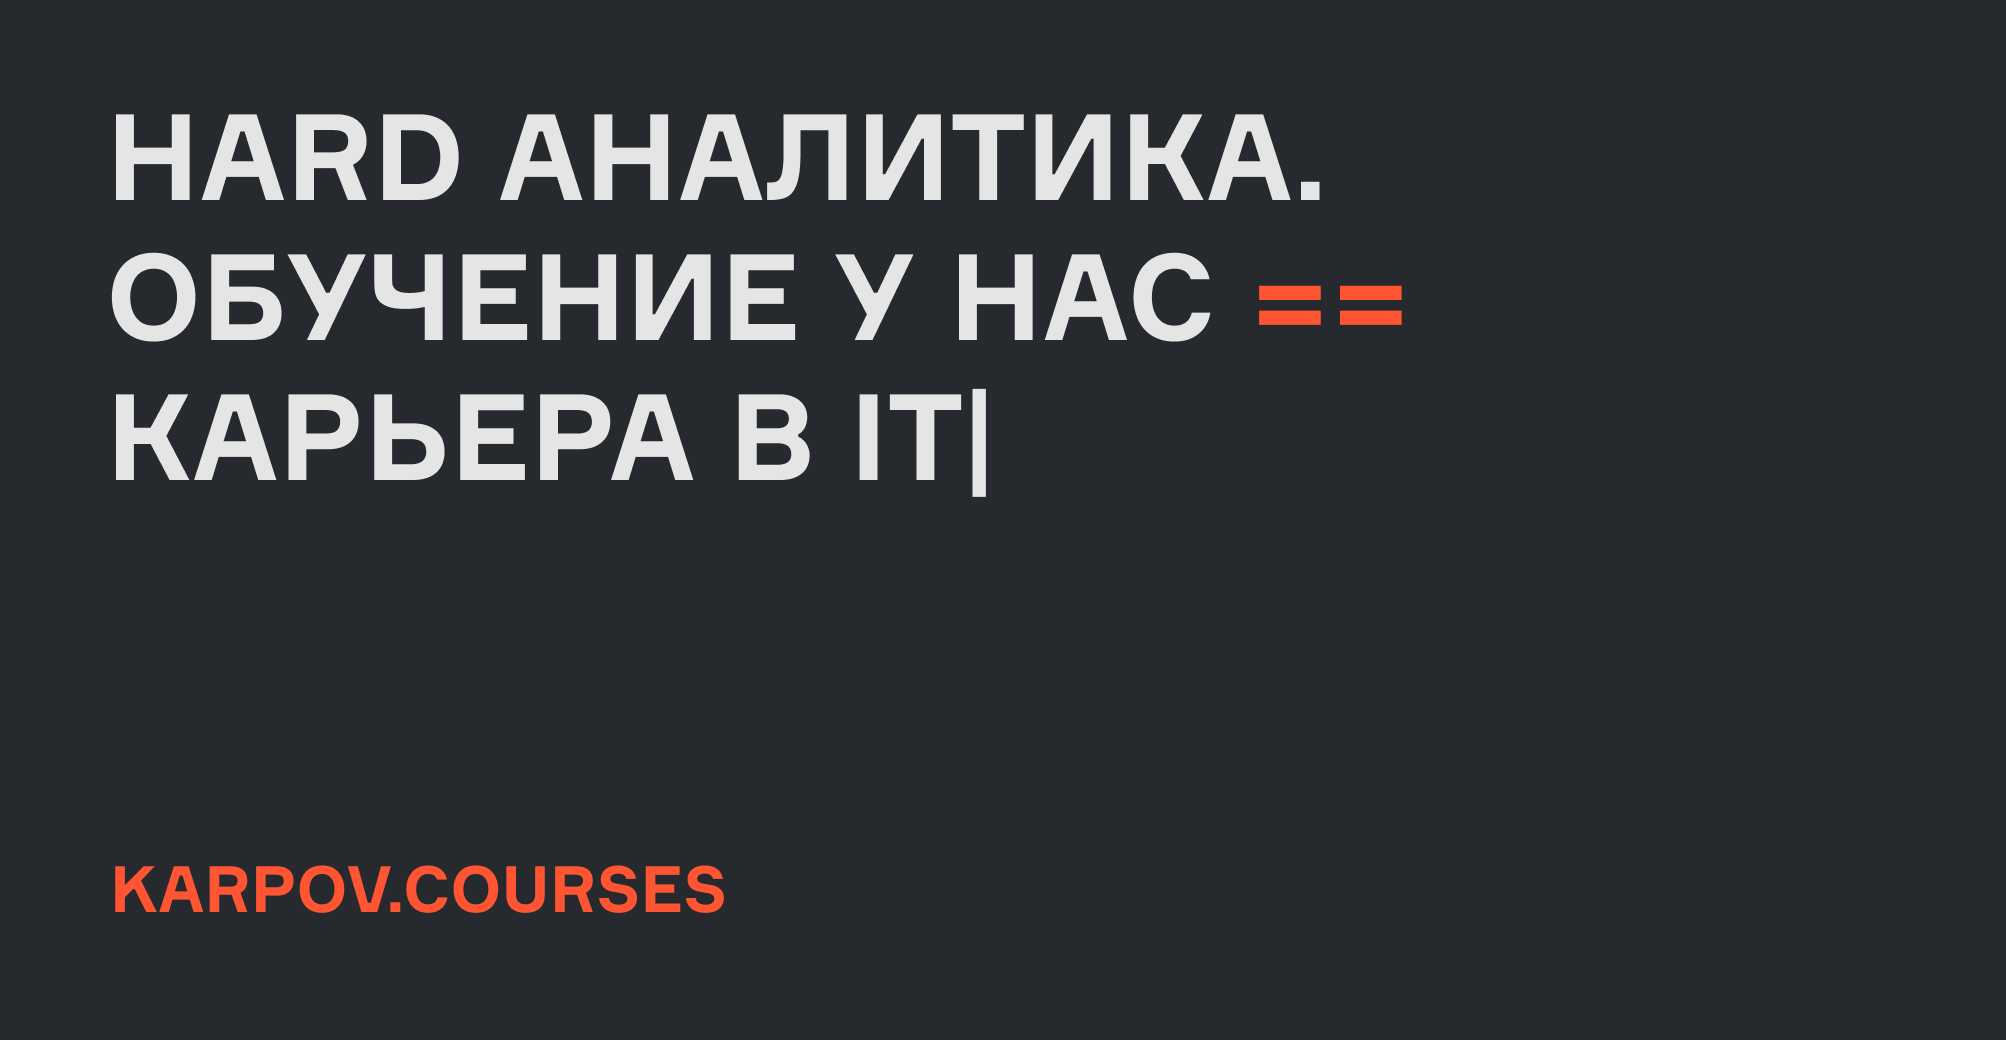 karpov.courses